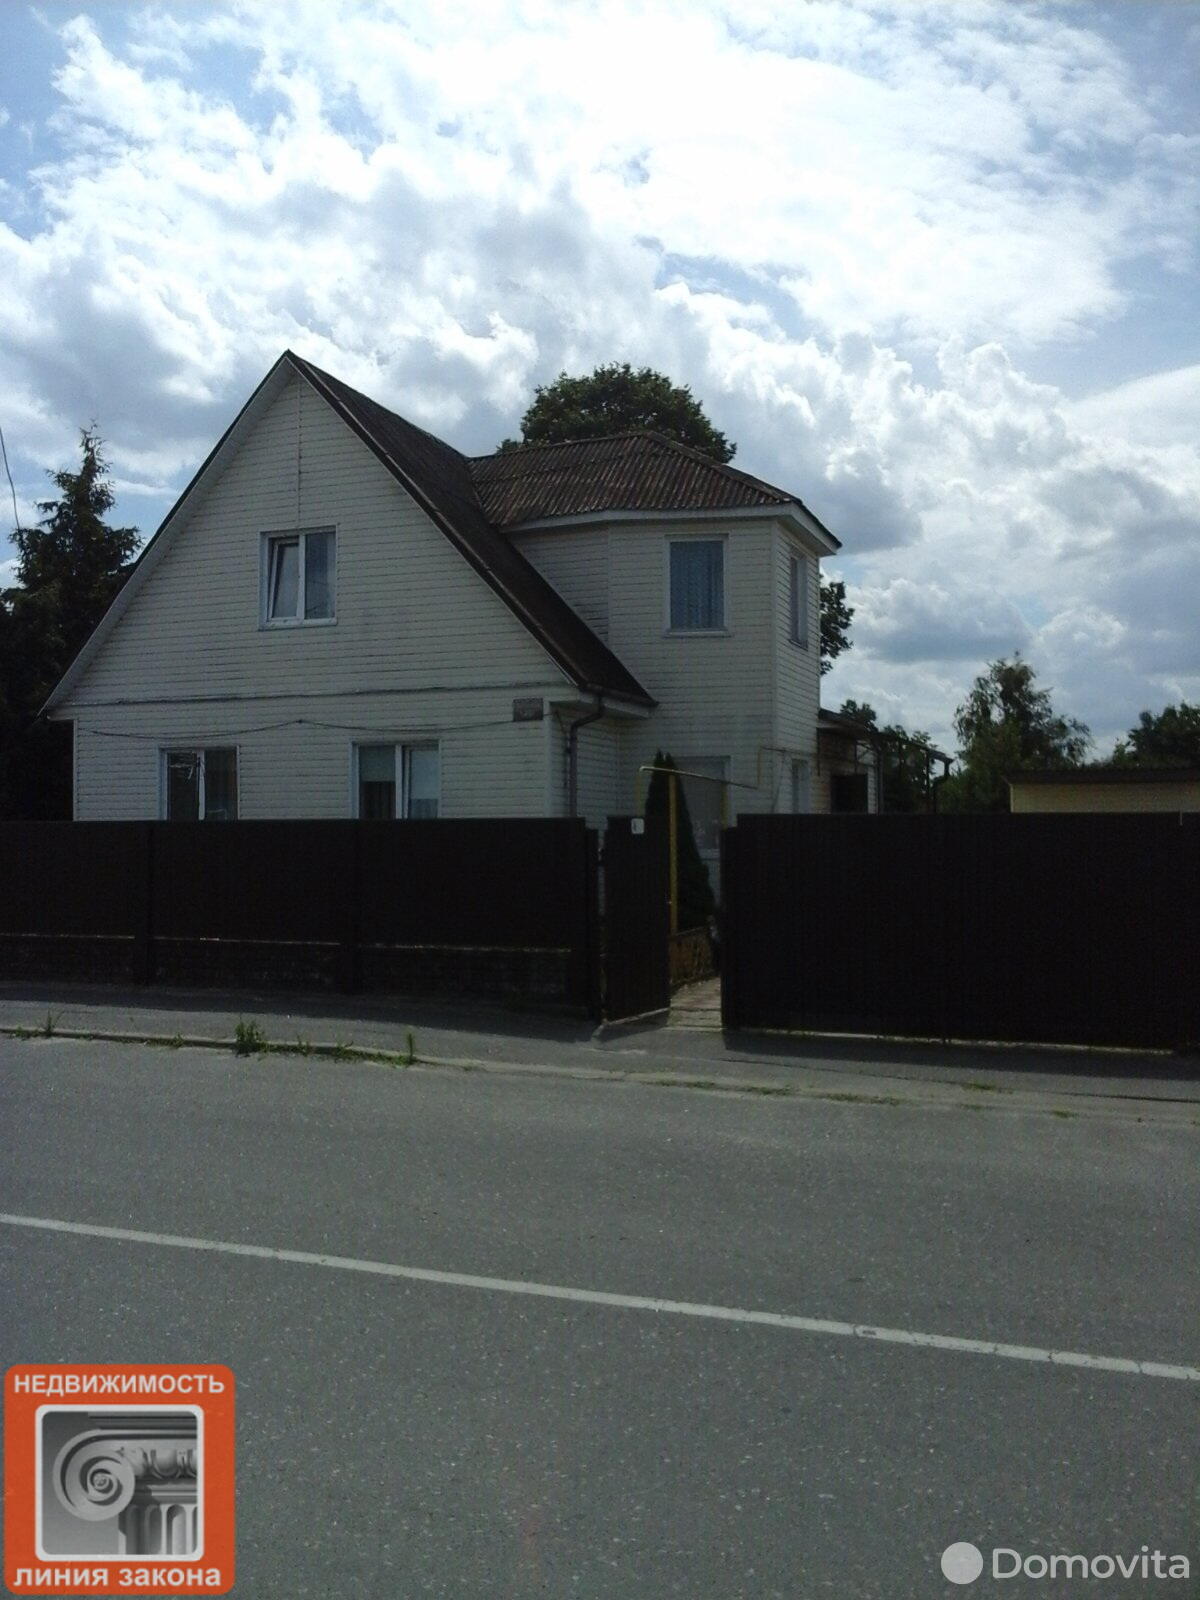 Продажа 2-этажного дома в Петрикове, Гомельская область ул. Липунова, 38000USD, код 611457 - фото 2